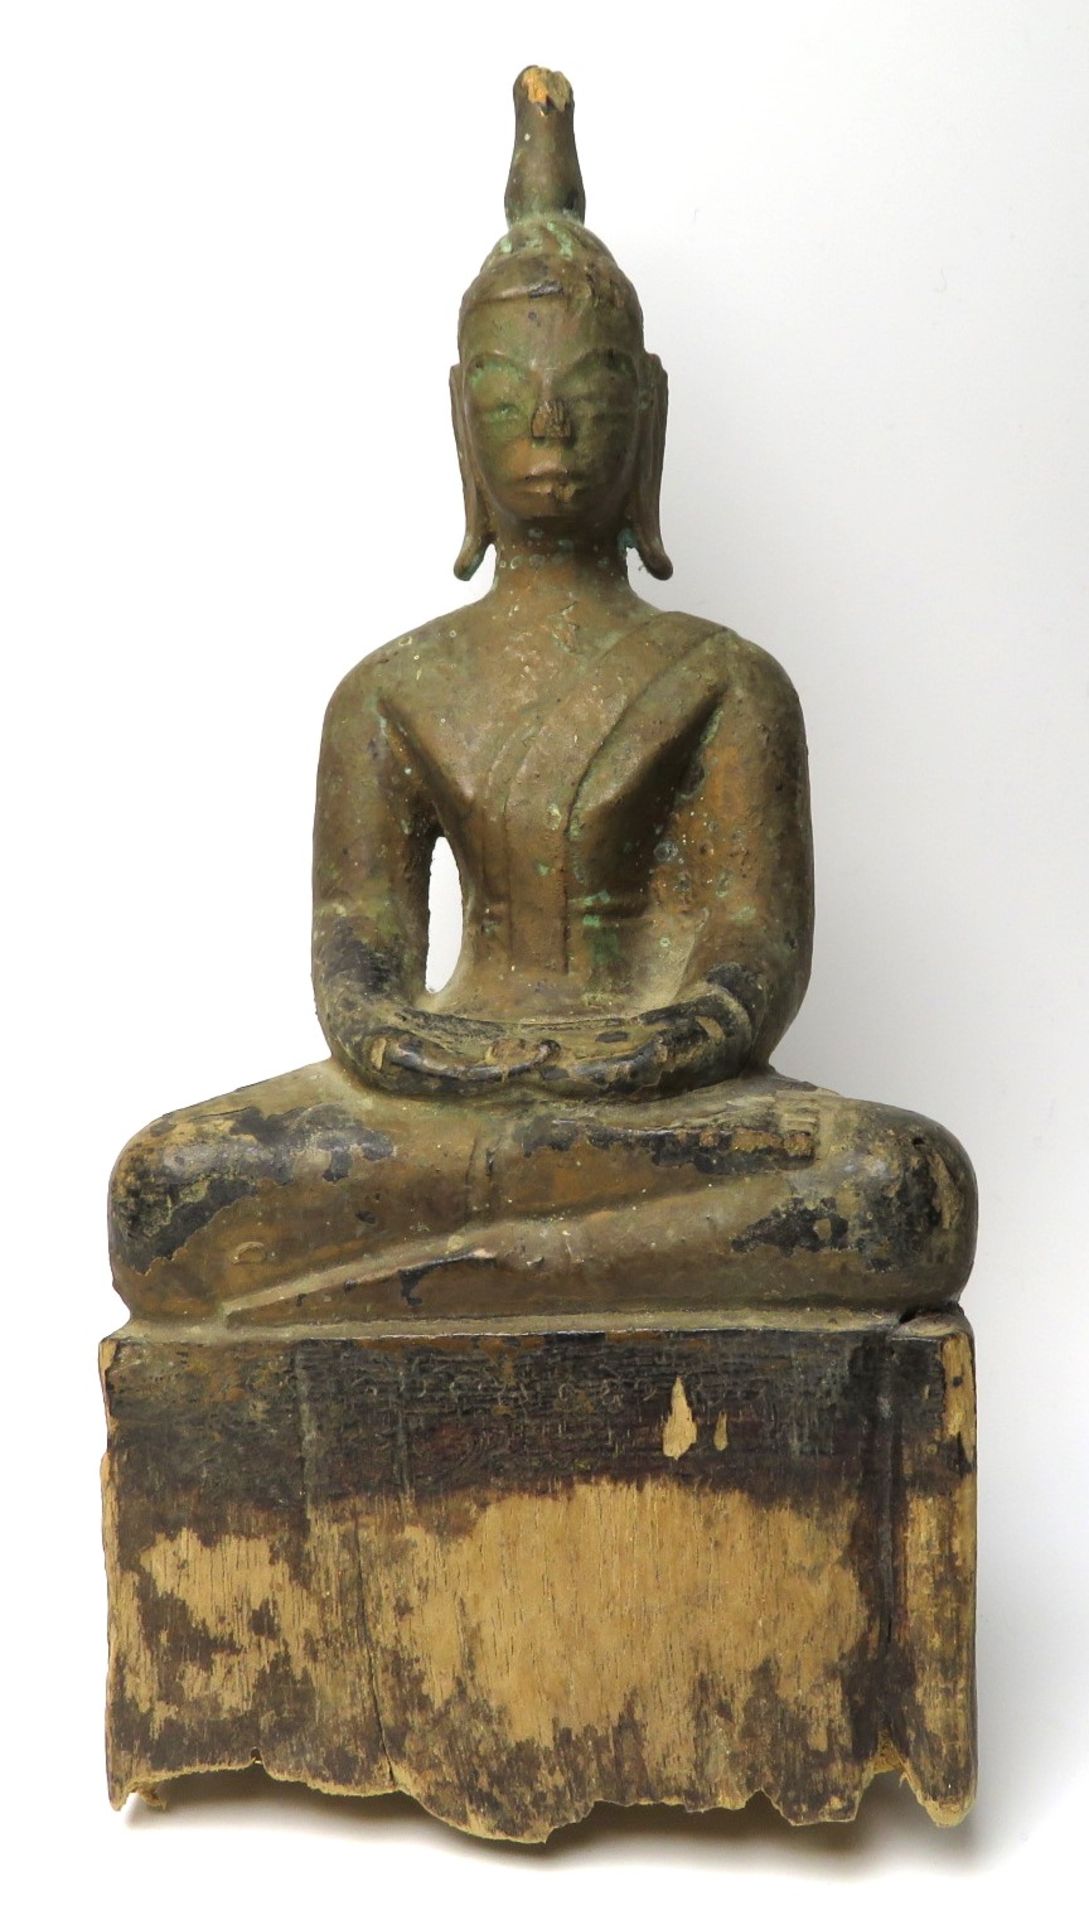 Sitzender Buddha im Lotussitz, Südostasien, antik, Holz geschnitzt, gefasst, best., 19,5 x 9,5 x 5,